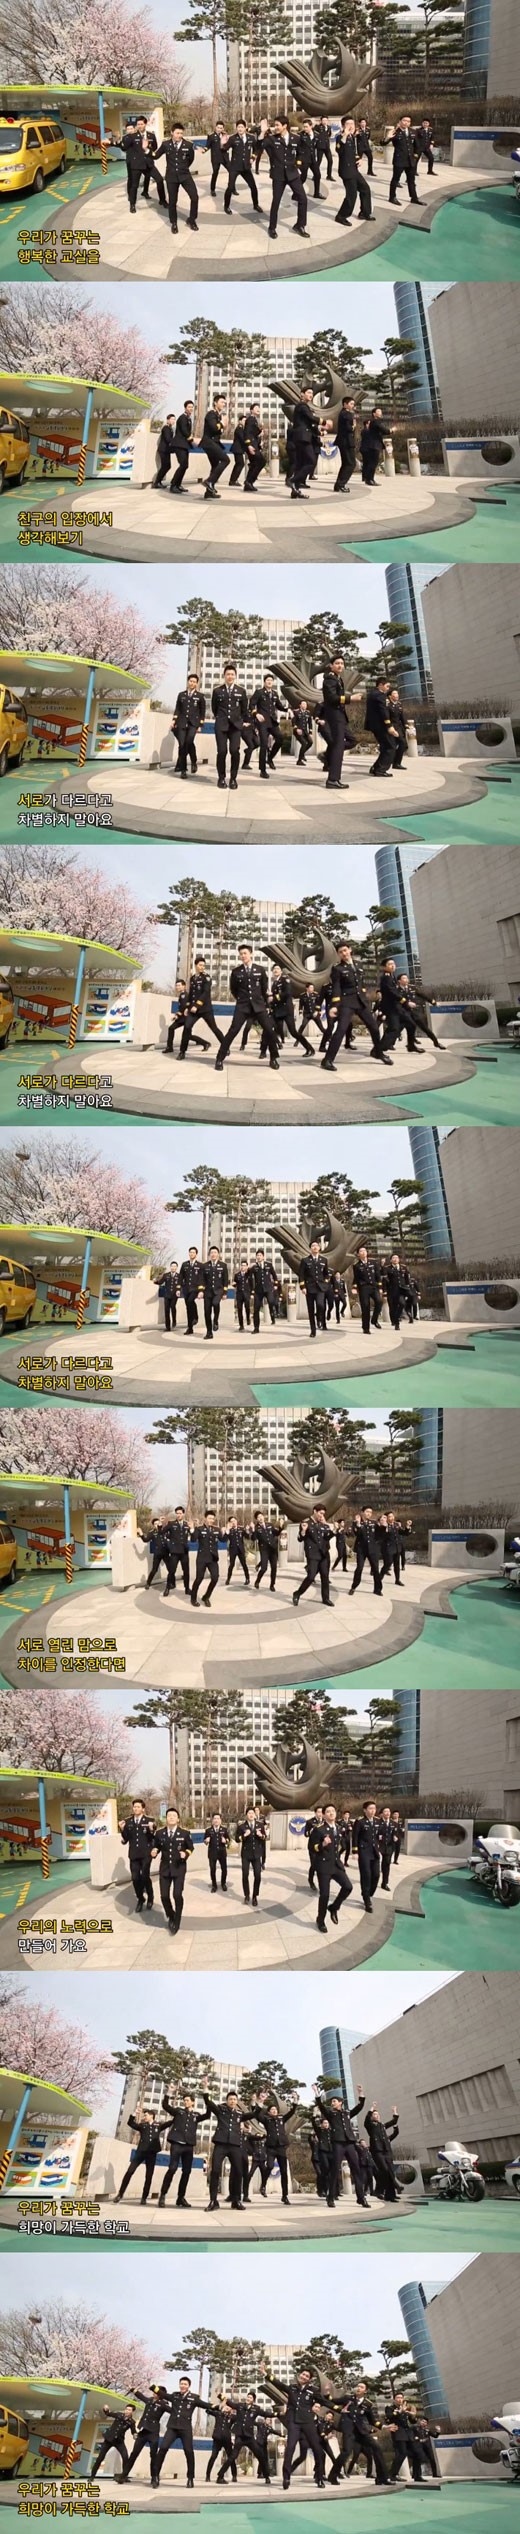 東方神起 チャンミン Super Junior ドンヘ 可愛い警察ダンスを披露 揃って踊る姿に視線集中 Kstyle